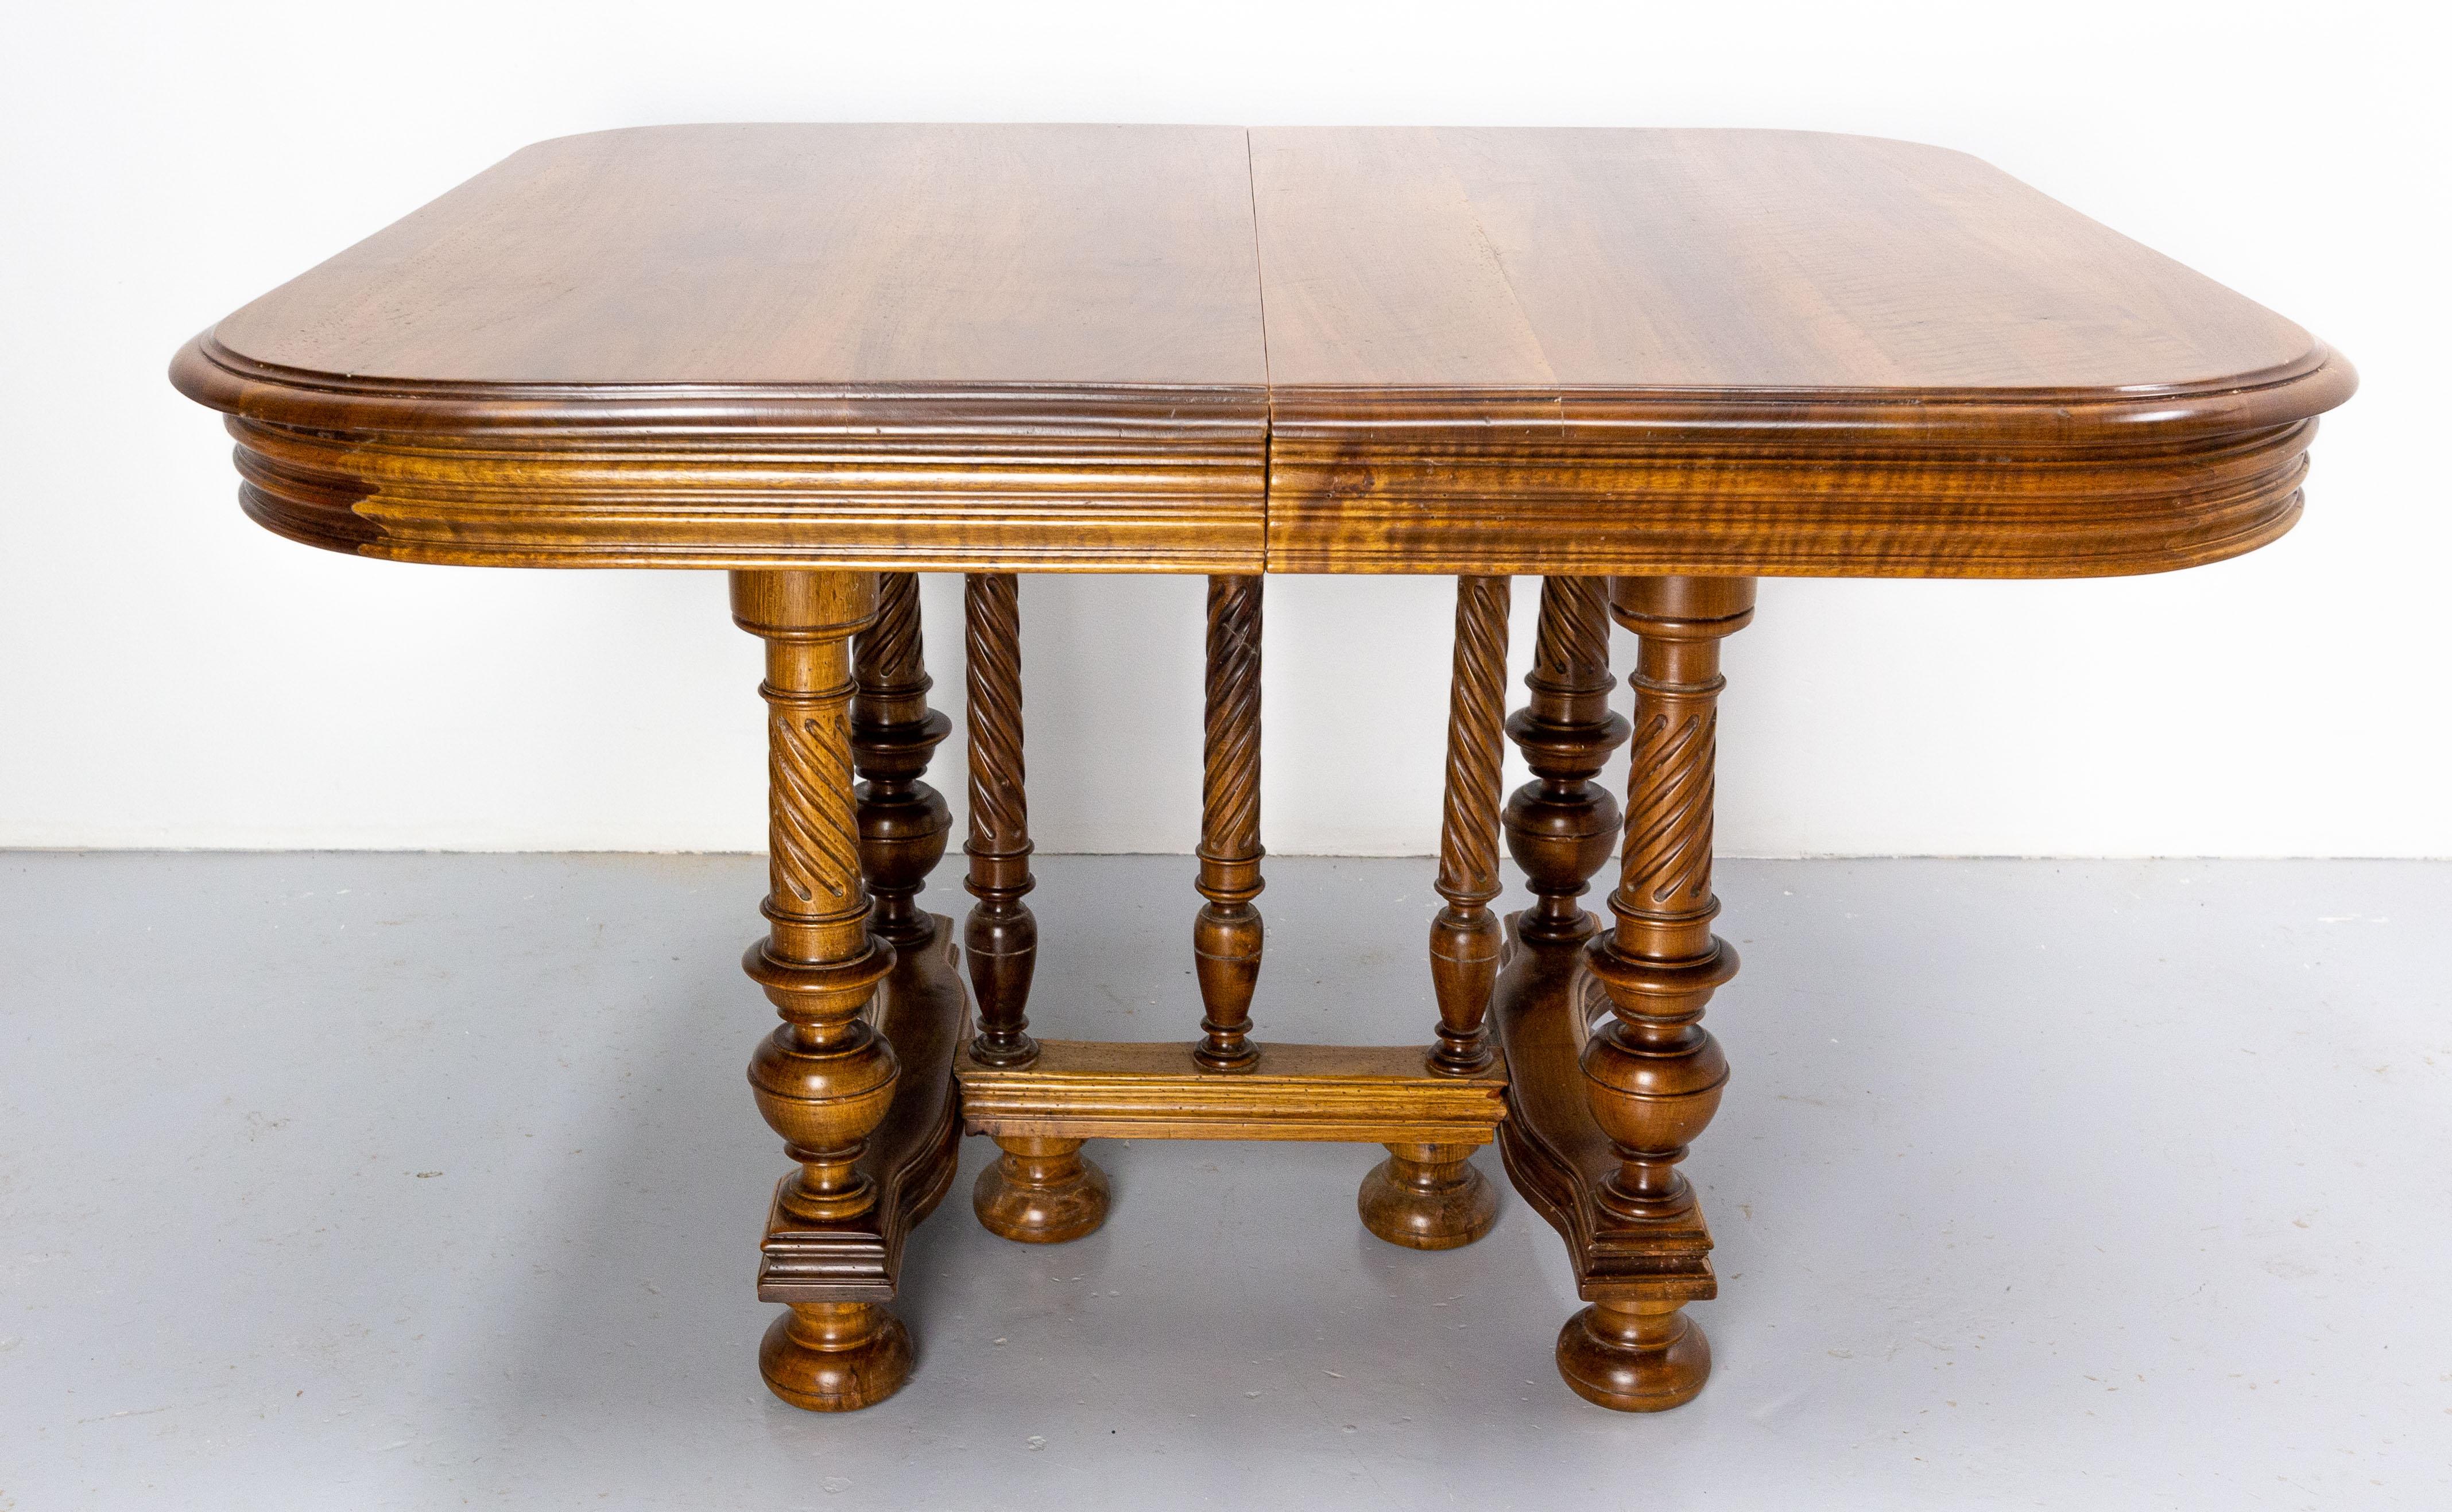 Dieser Esstisch aus Nussbaumholz im Stil Louis XIII wurde in Frankreich hergestellt.
Ohne die Verlängerungen ist dieser Tisch 113 cm (44,49 Zoll) lang. 
Die sieben gedrehten Beine sind typisch für den Louis XIII-Stil.
Die Erweiterungen der